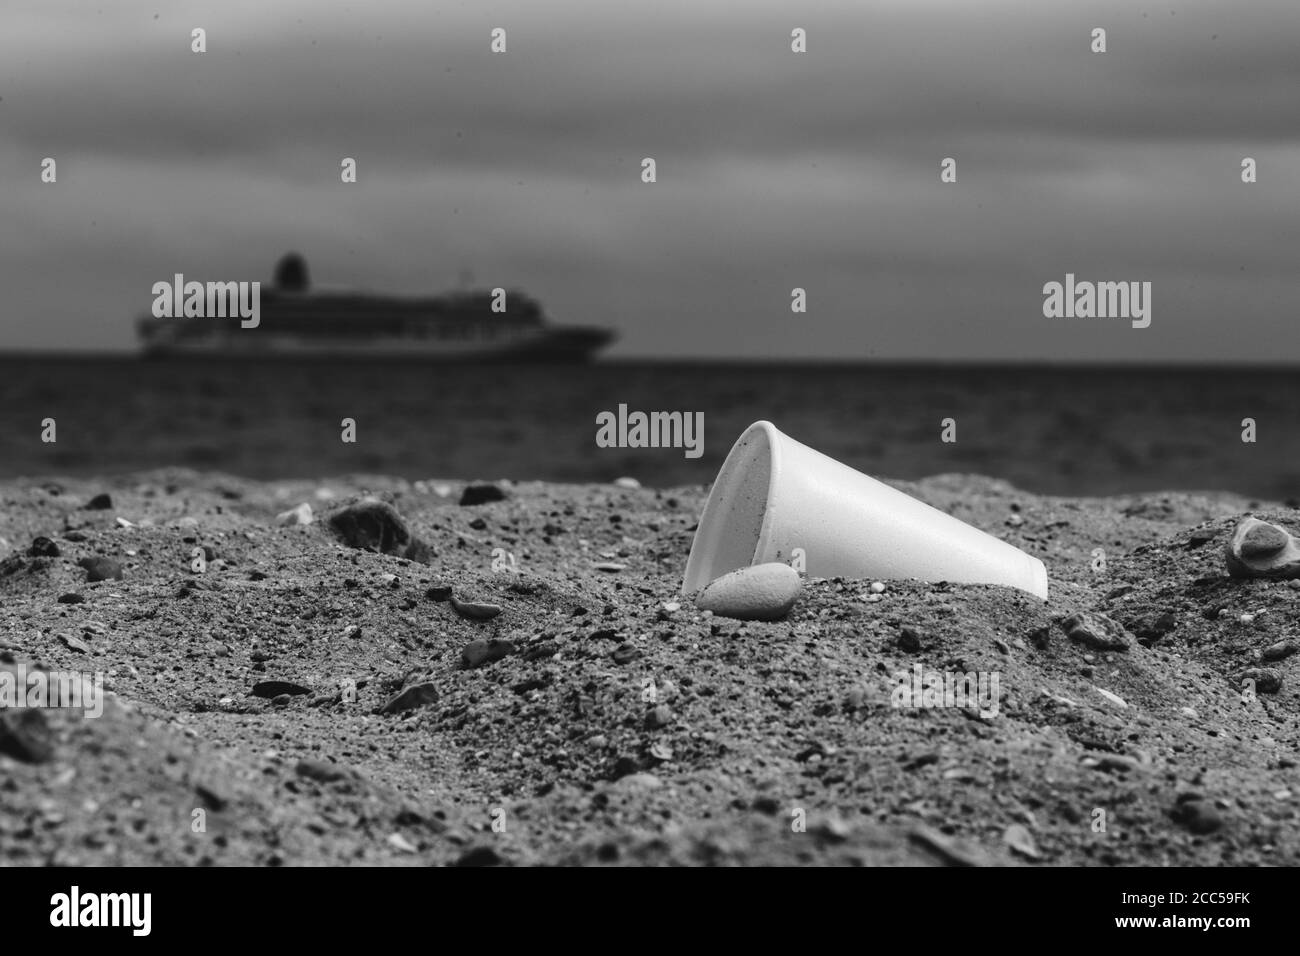 Pollution plastique : coupe Styrofoam laissée par les touristes sur la plage. Bateau de croisière en arrière-plan. Bournemouth, Royaume-Uni. Banque D'Images